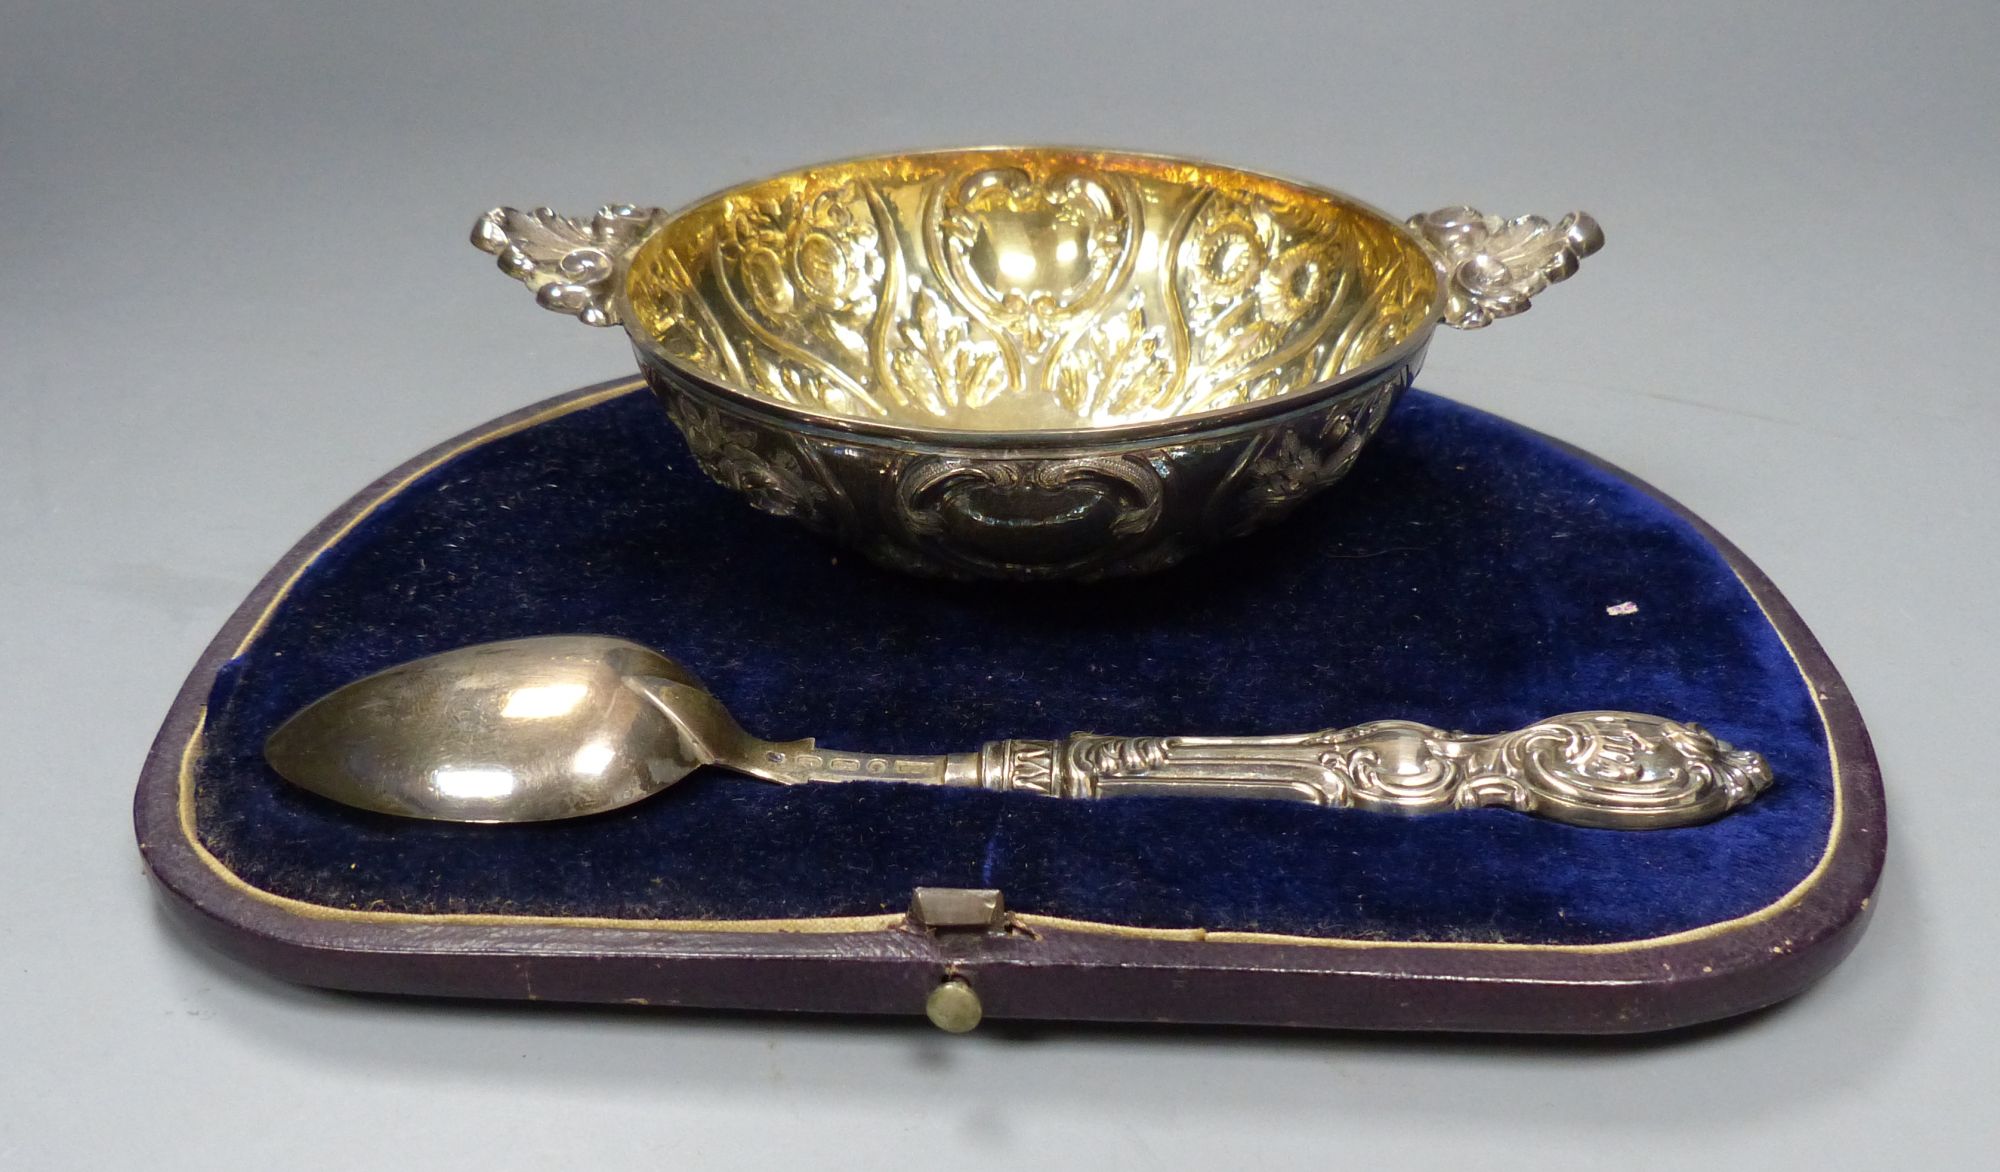 A cased Victorian silver quaich/porringer and spoon, Hilliard & Thomason, Birmingham,1857/60, bowl width 15.4cm, bowl. 139 grams.